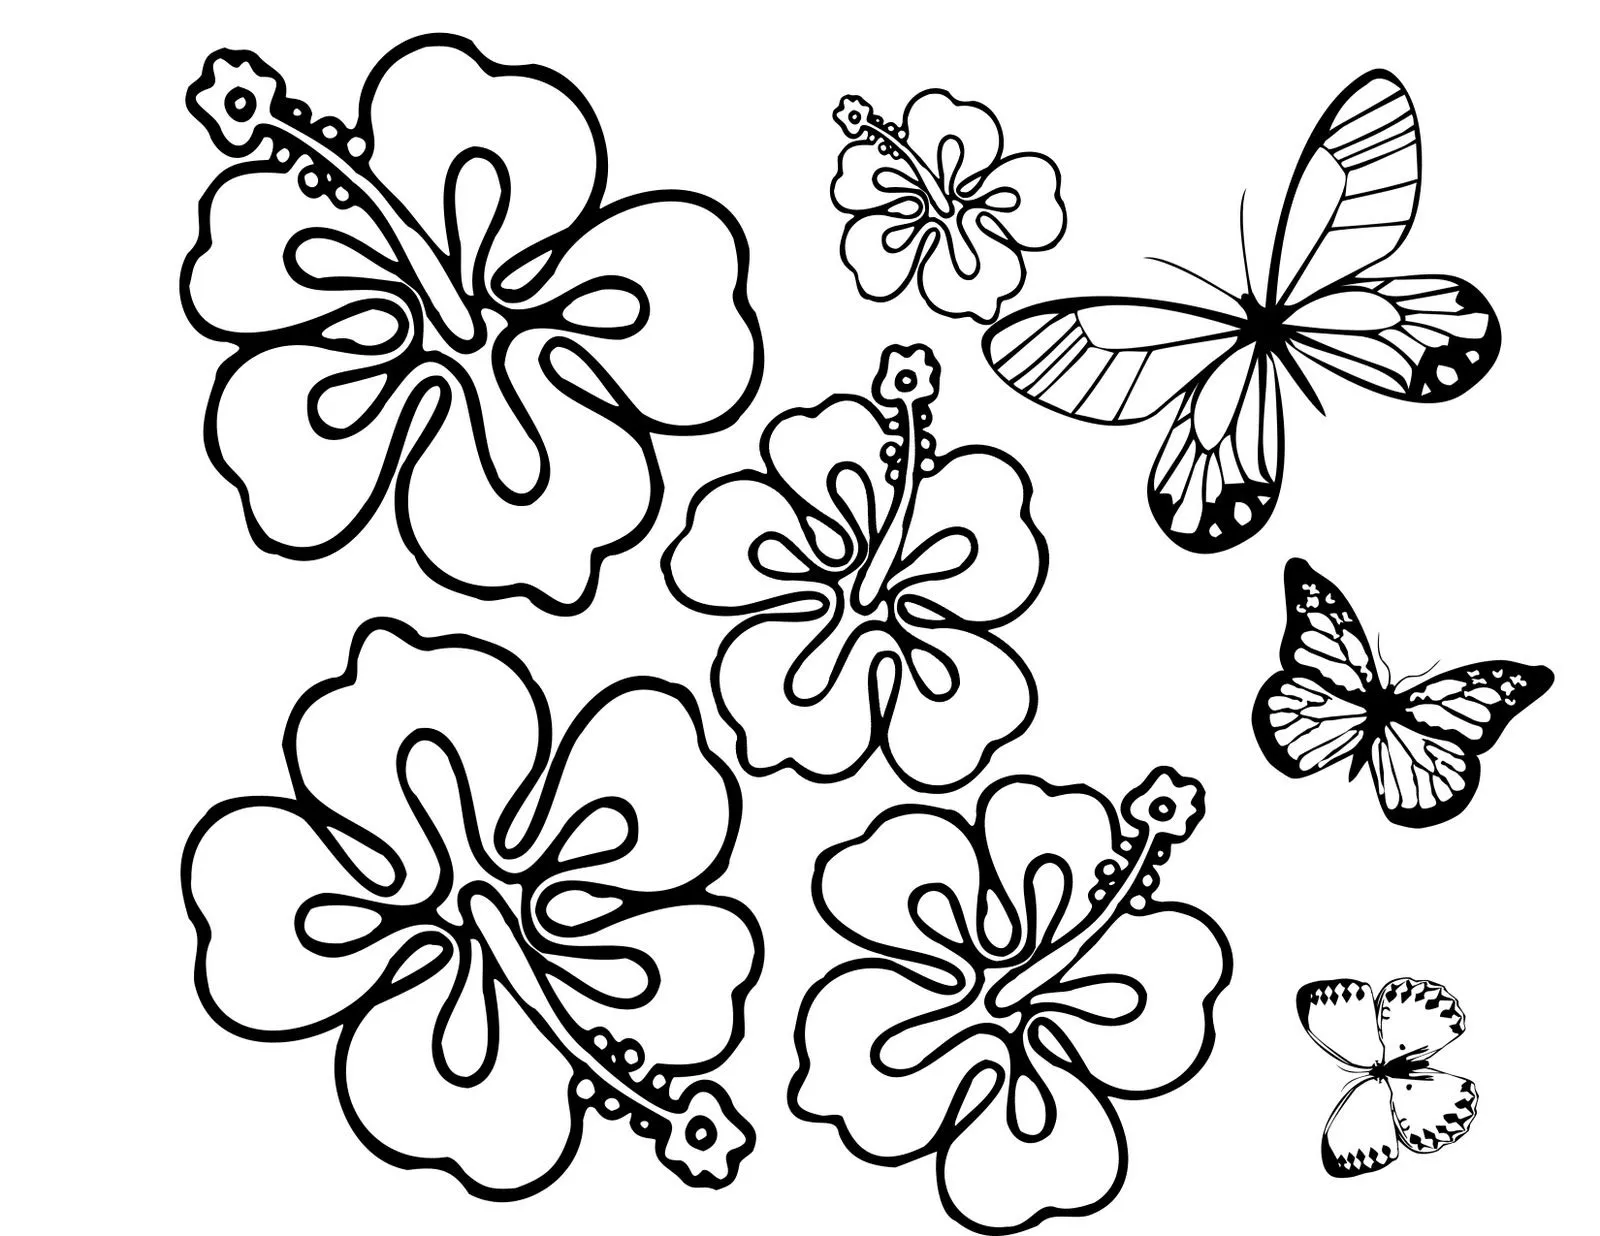 Flores y mariposas listas para colorear, pintar, o llenar con bolitas ...